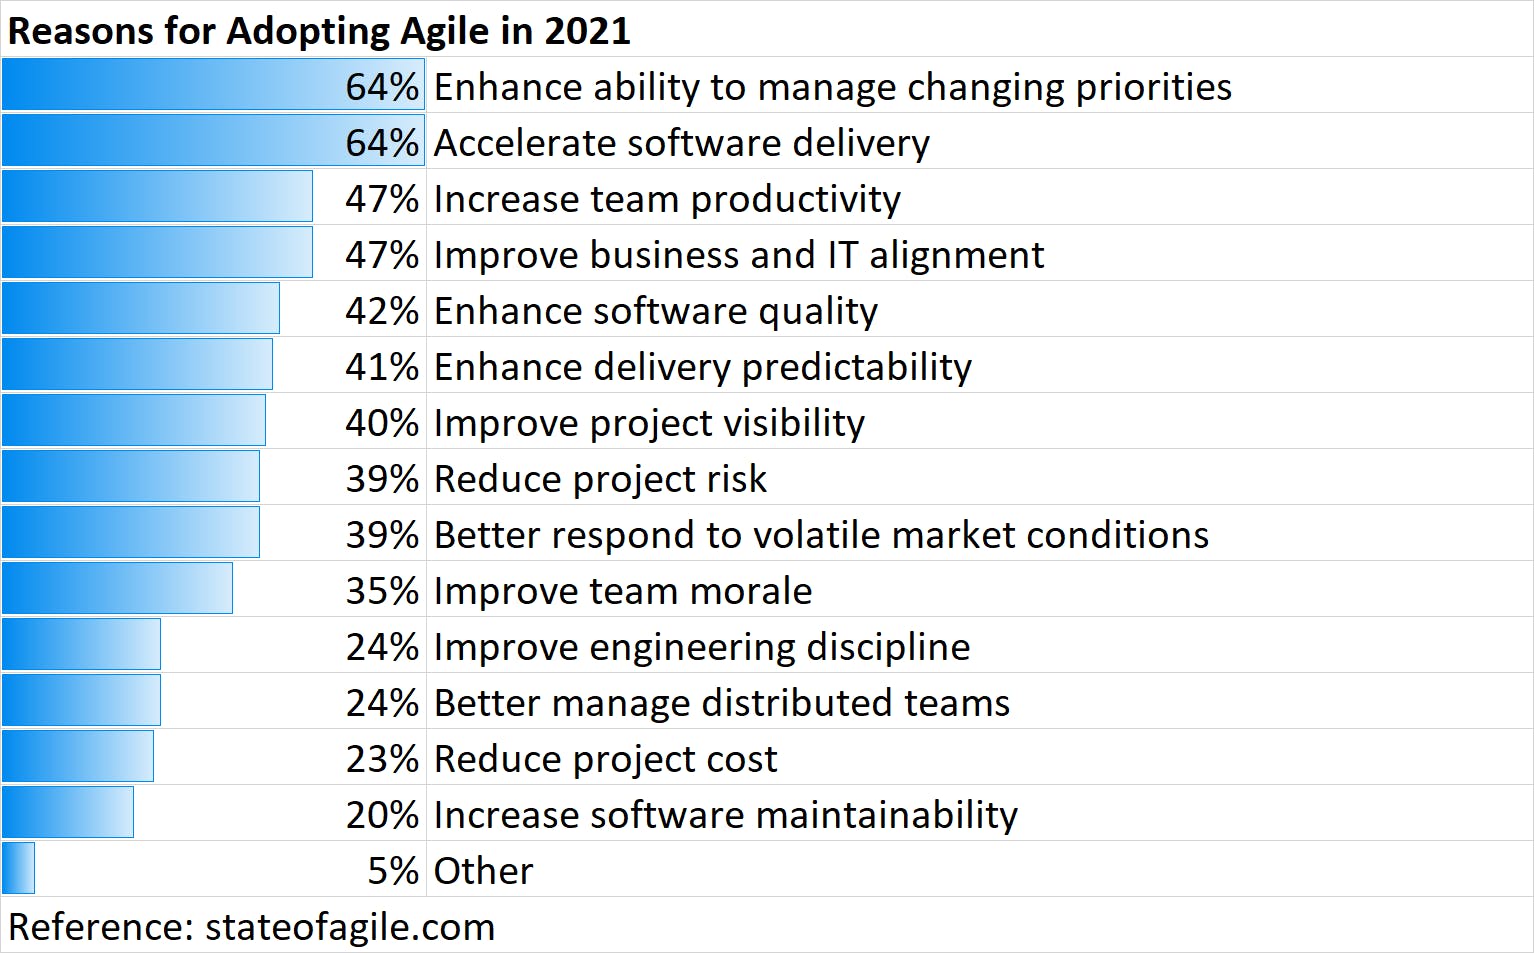 Top reasons for adopting agile